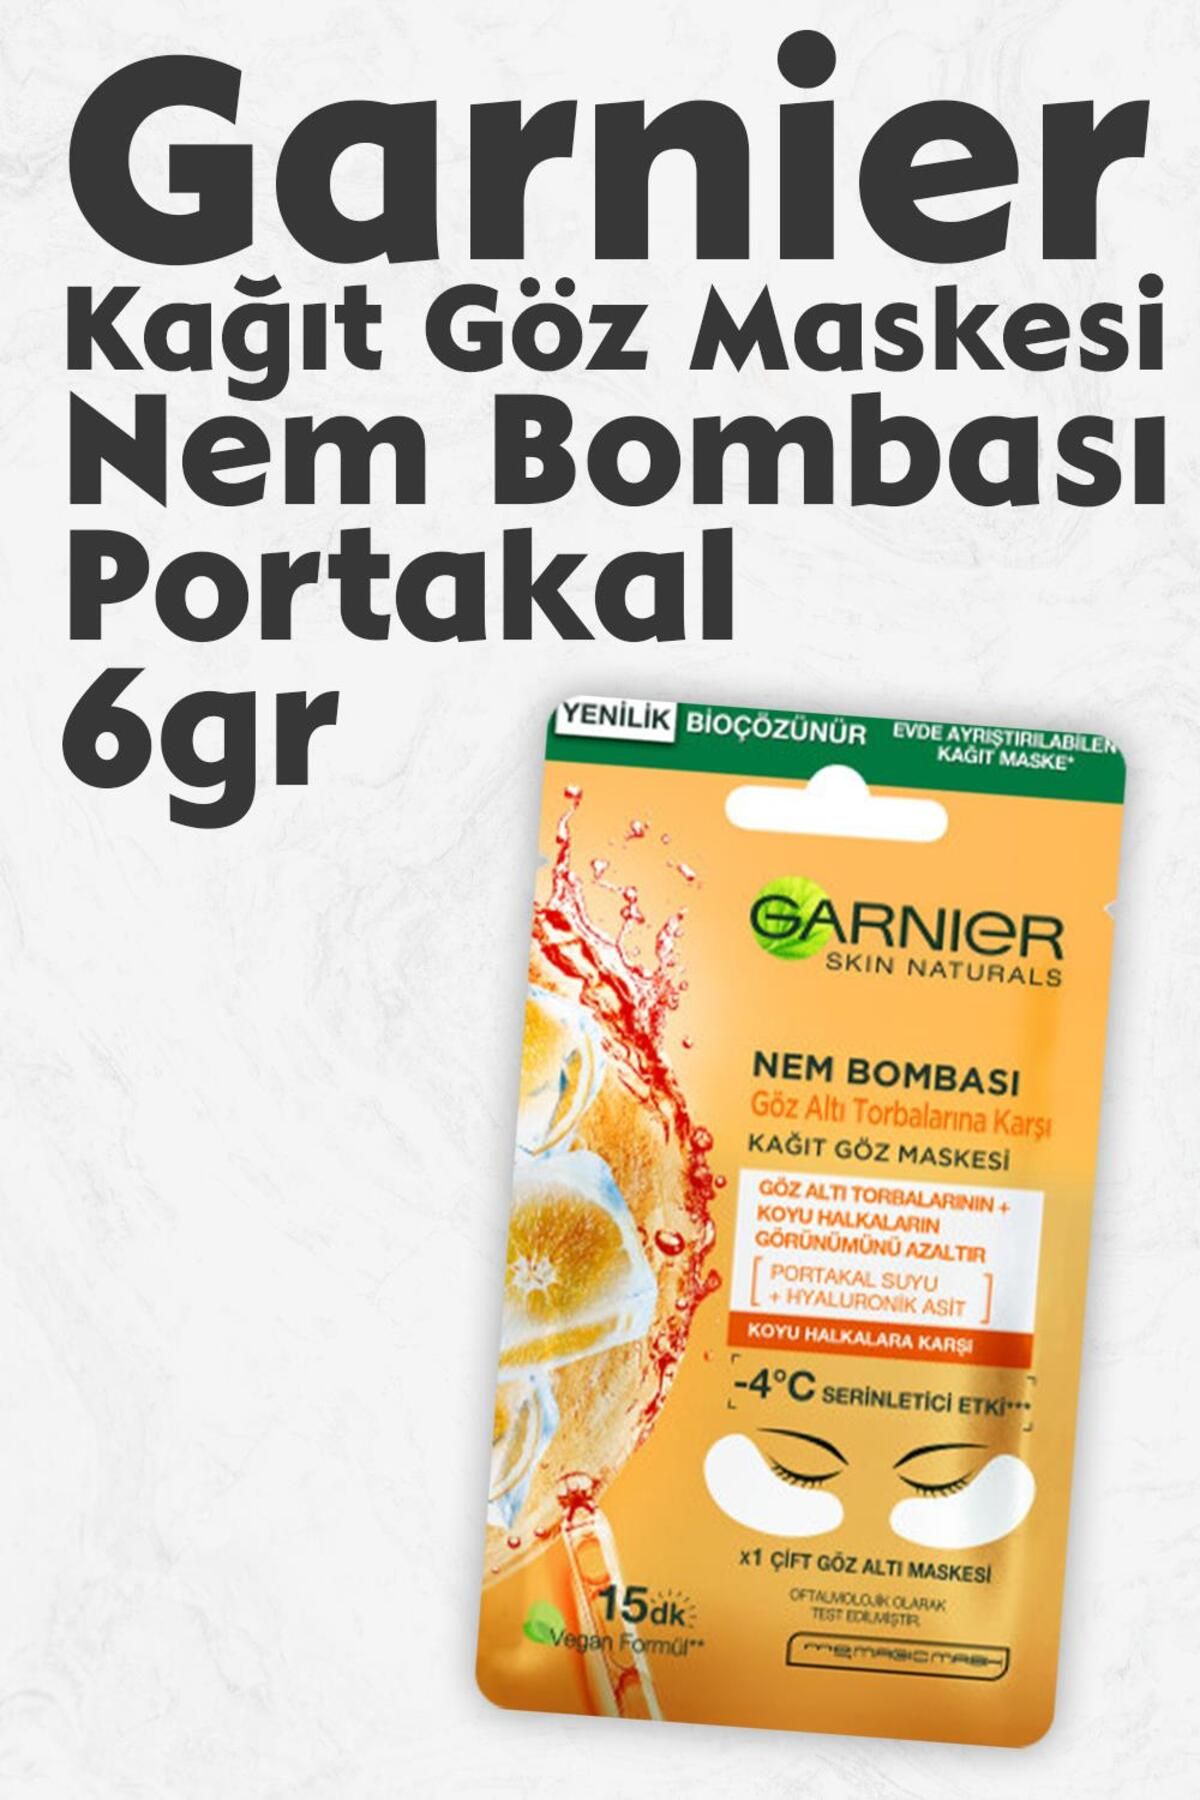 Garnier Kağıt Göz Maskesi Nem Bombası Portakal 6 gr